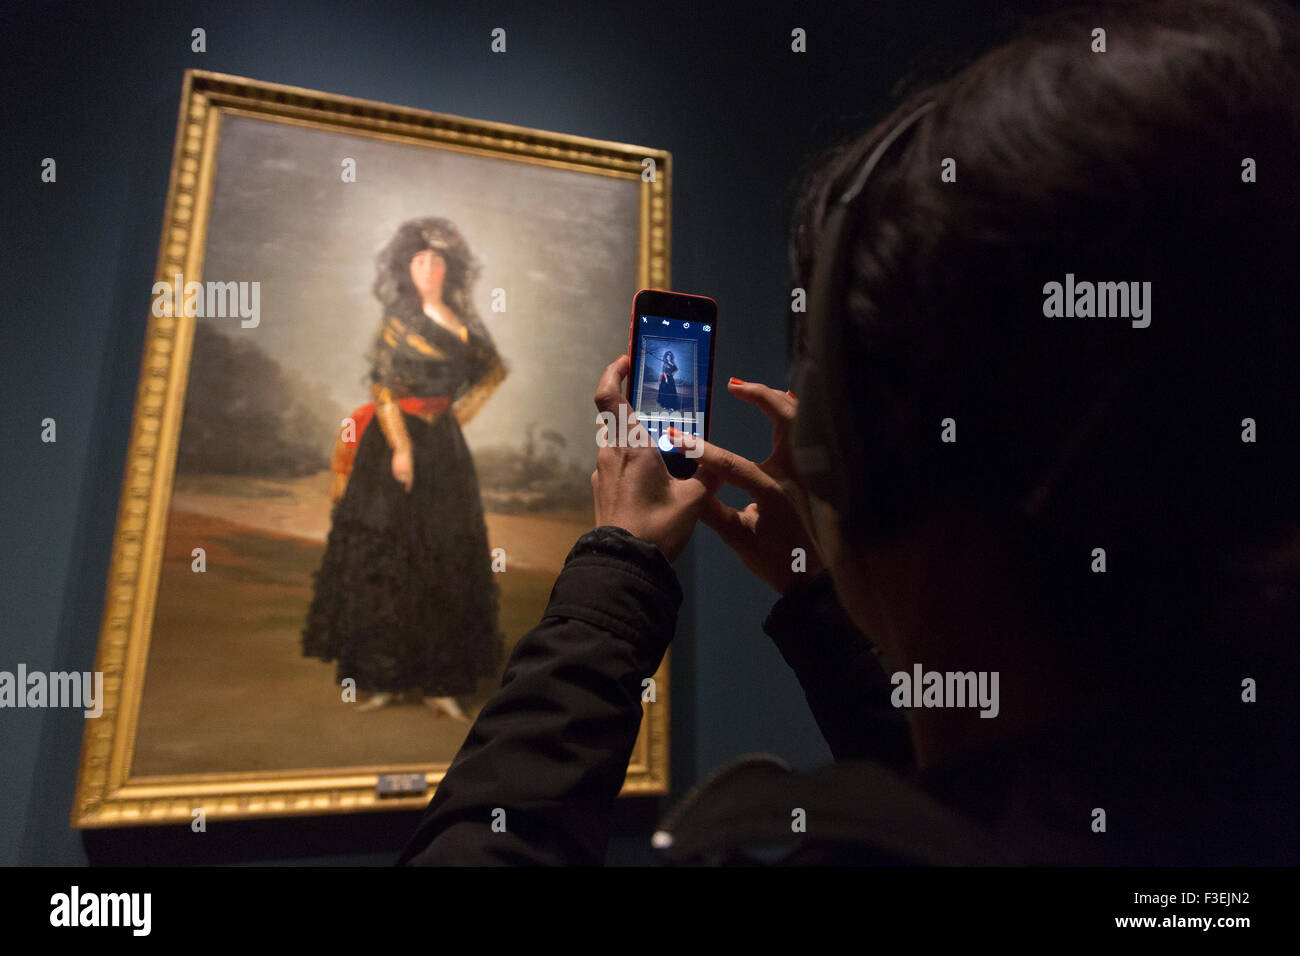 Londra, Inghilterra. 06/10/2015. Premere Anteprima della mostra Goya: i ritratti della National Gallery di Londra, Inghilterra. La mostra si apre al pubblico il 7 ottobre 2015 e fino al 10 gennaio 2016. Pittura: la duchessa di Alba, 1797. Foto Stock